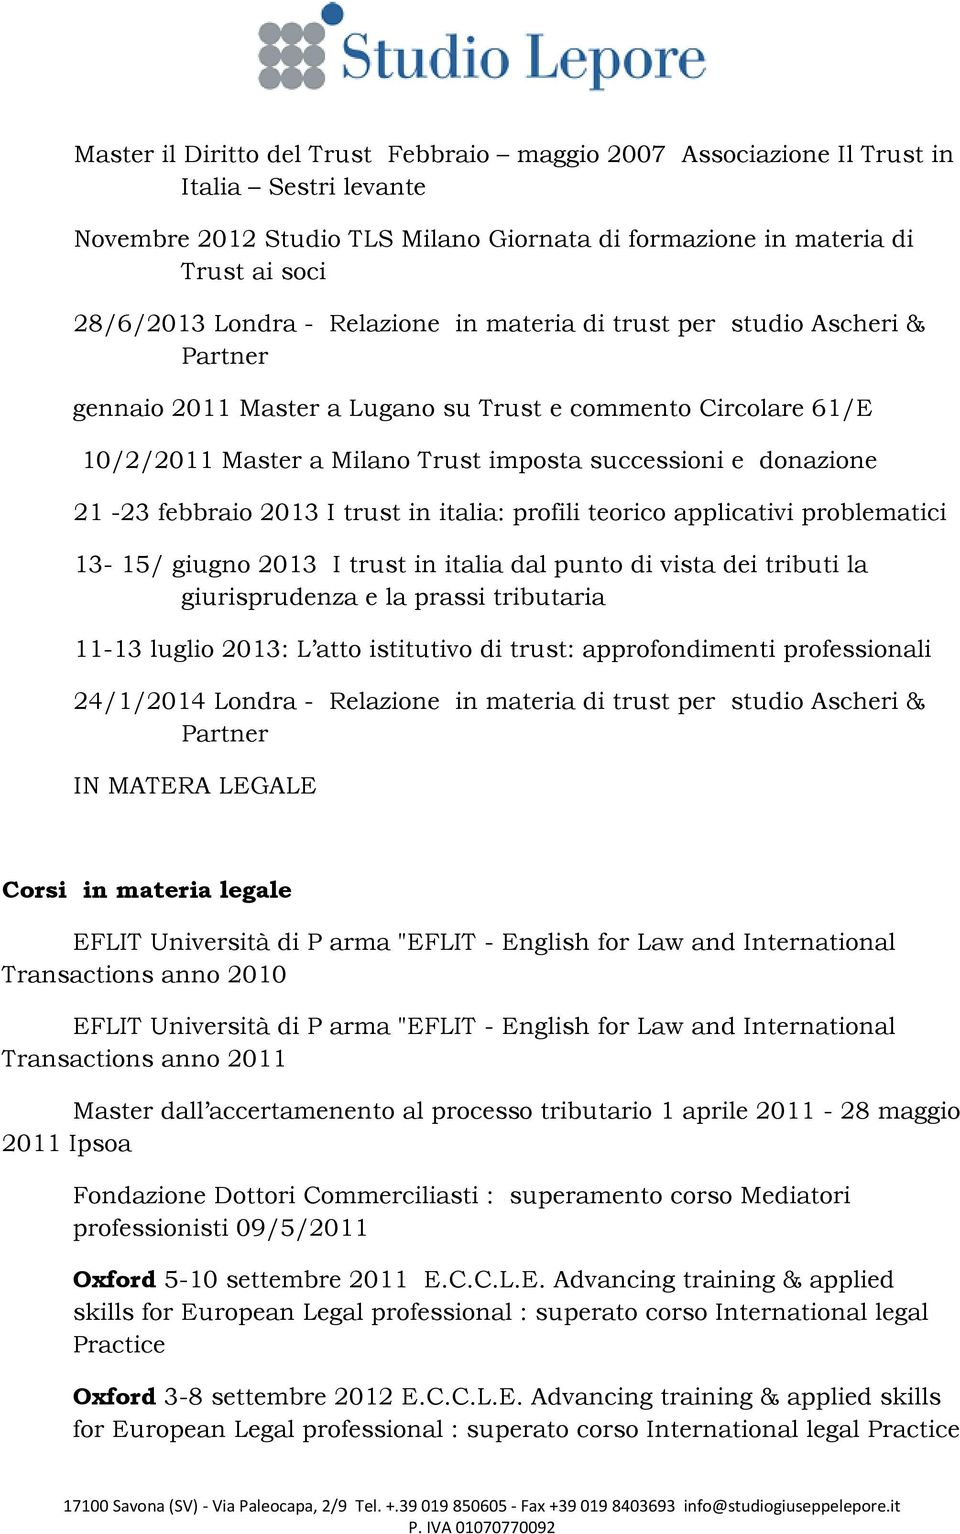 febbraio 2013 I trust in italia: profili teorico applicativi problematici 13-15/ giugno 2013 I trust in italia dal punto di vista dei tributi la giurisprudenza e la prassi tributaria 11-13 luglio